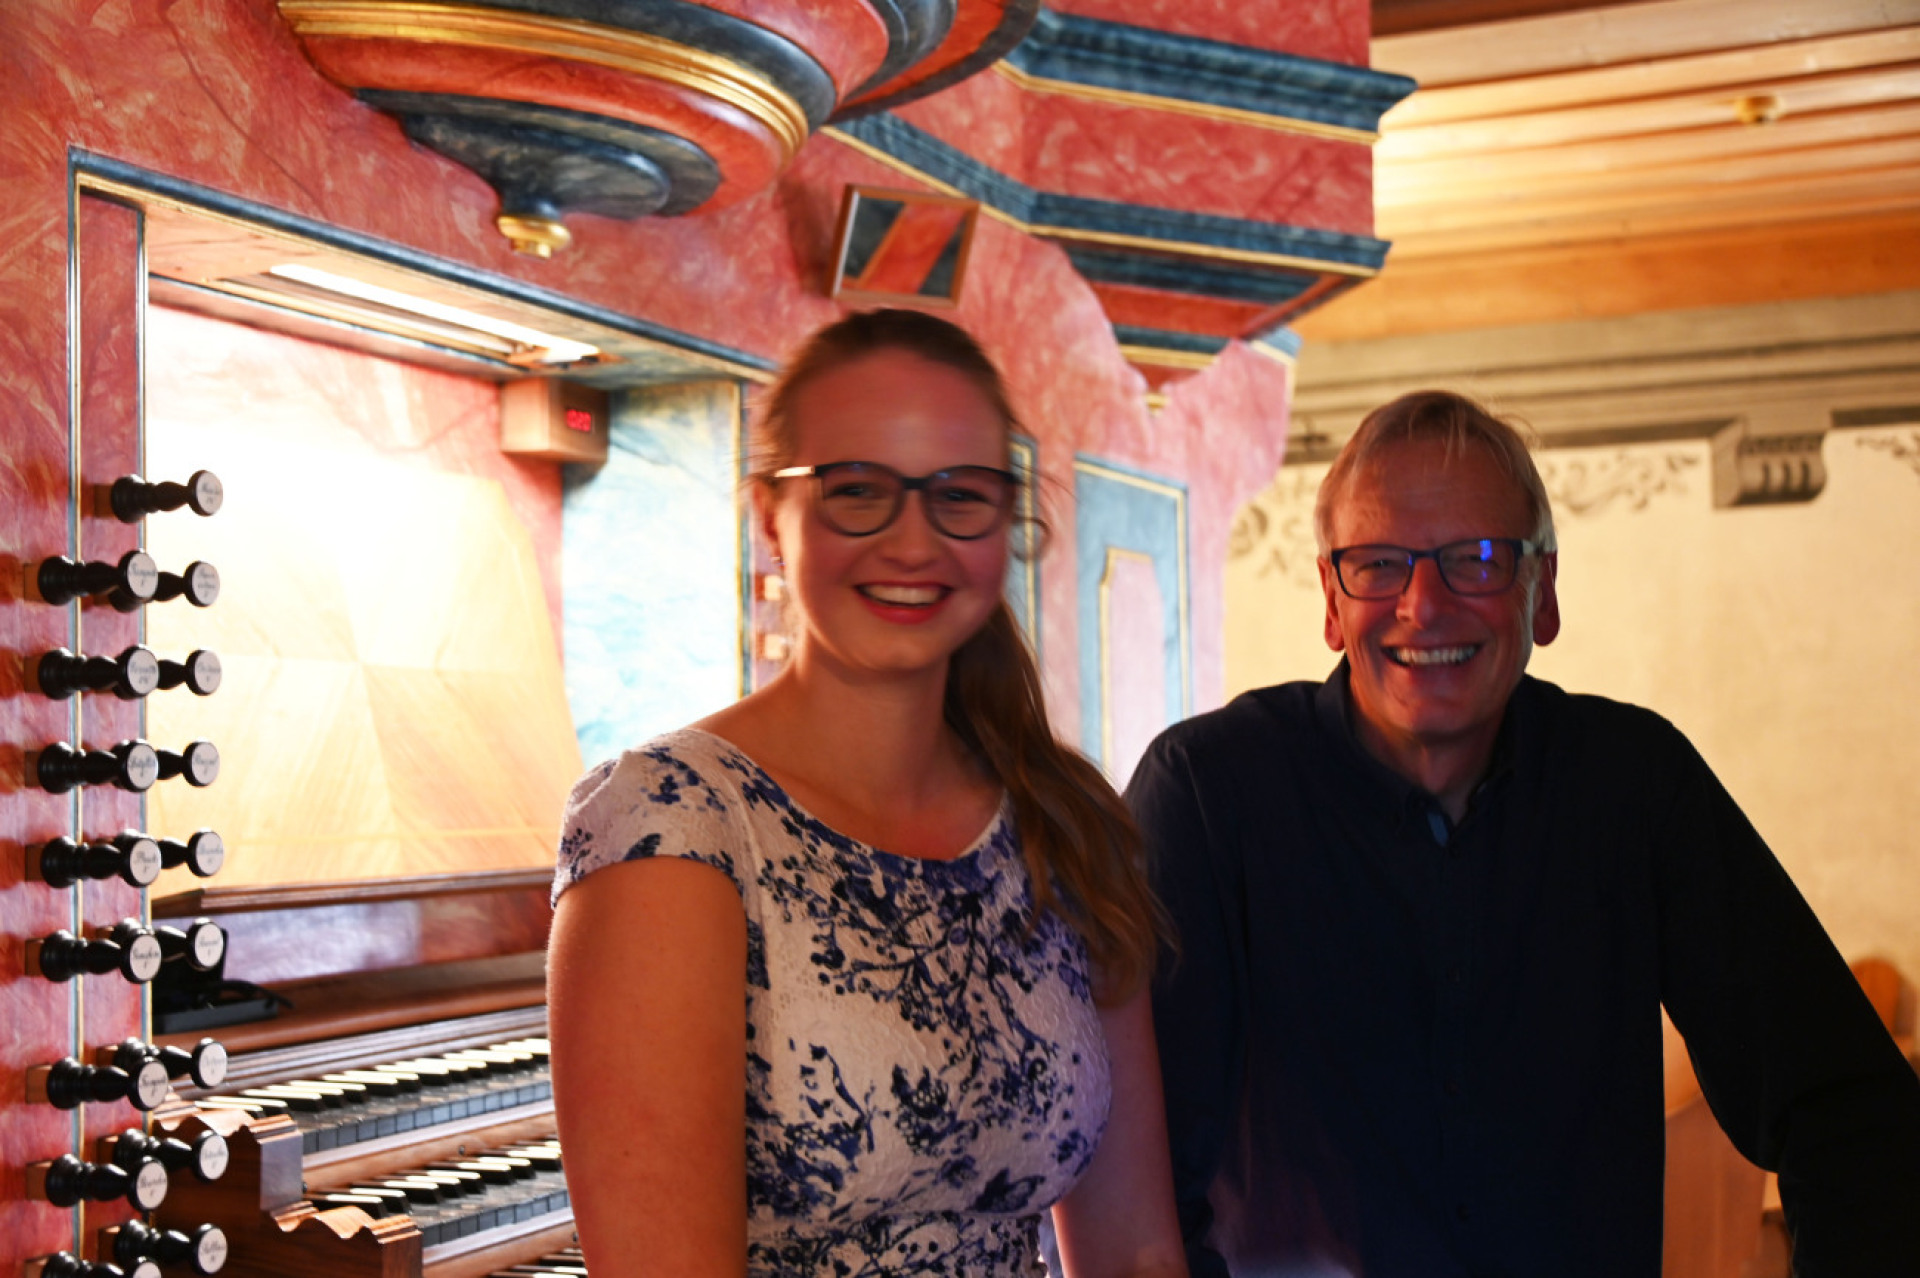 Die Musik und die ungewohnt hohen Temperaturen auf der Orgelempore liessen die Solistin Dea  Müller und den Organisten Roland Neuhaus ins Schwitzen geraten. (Foto: AVS)